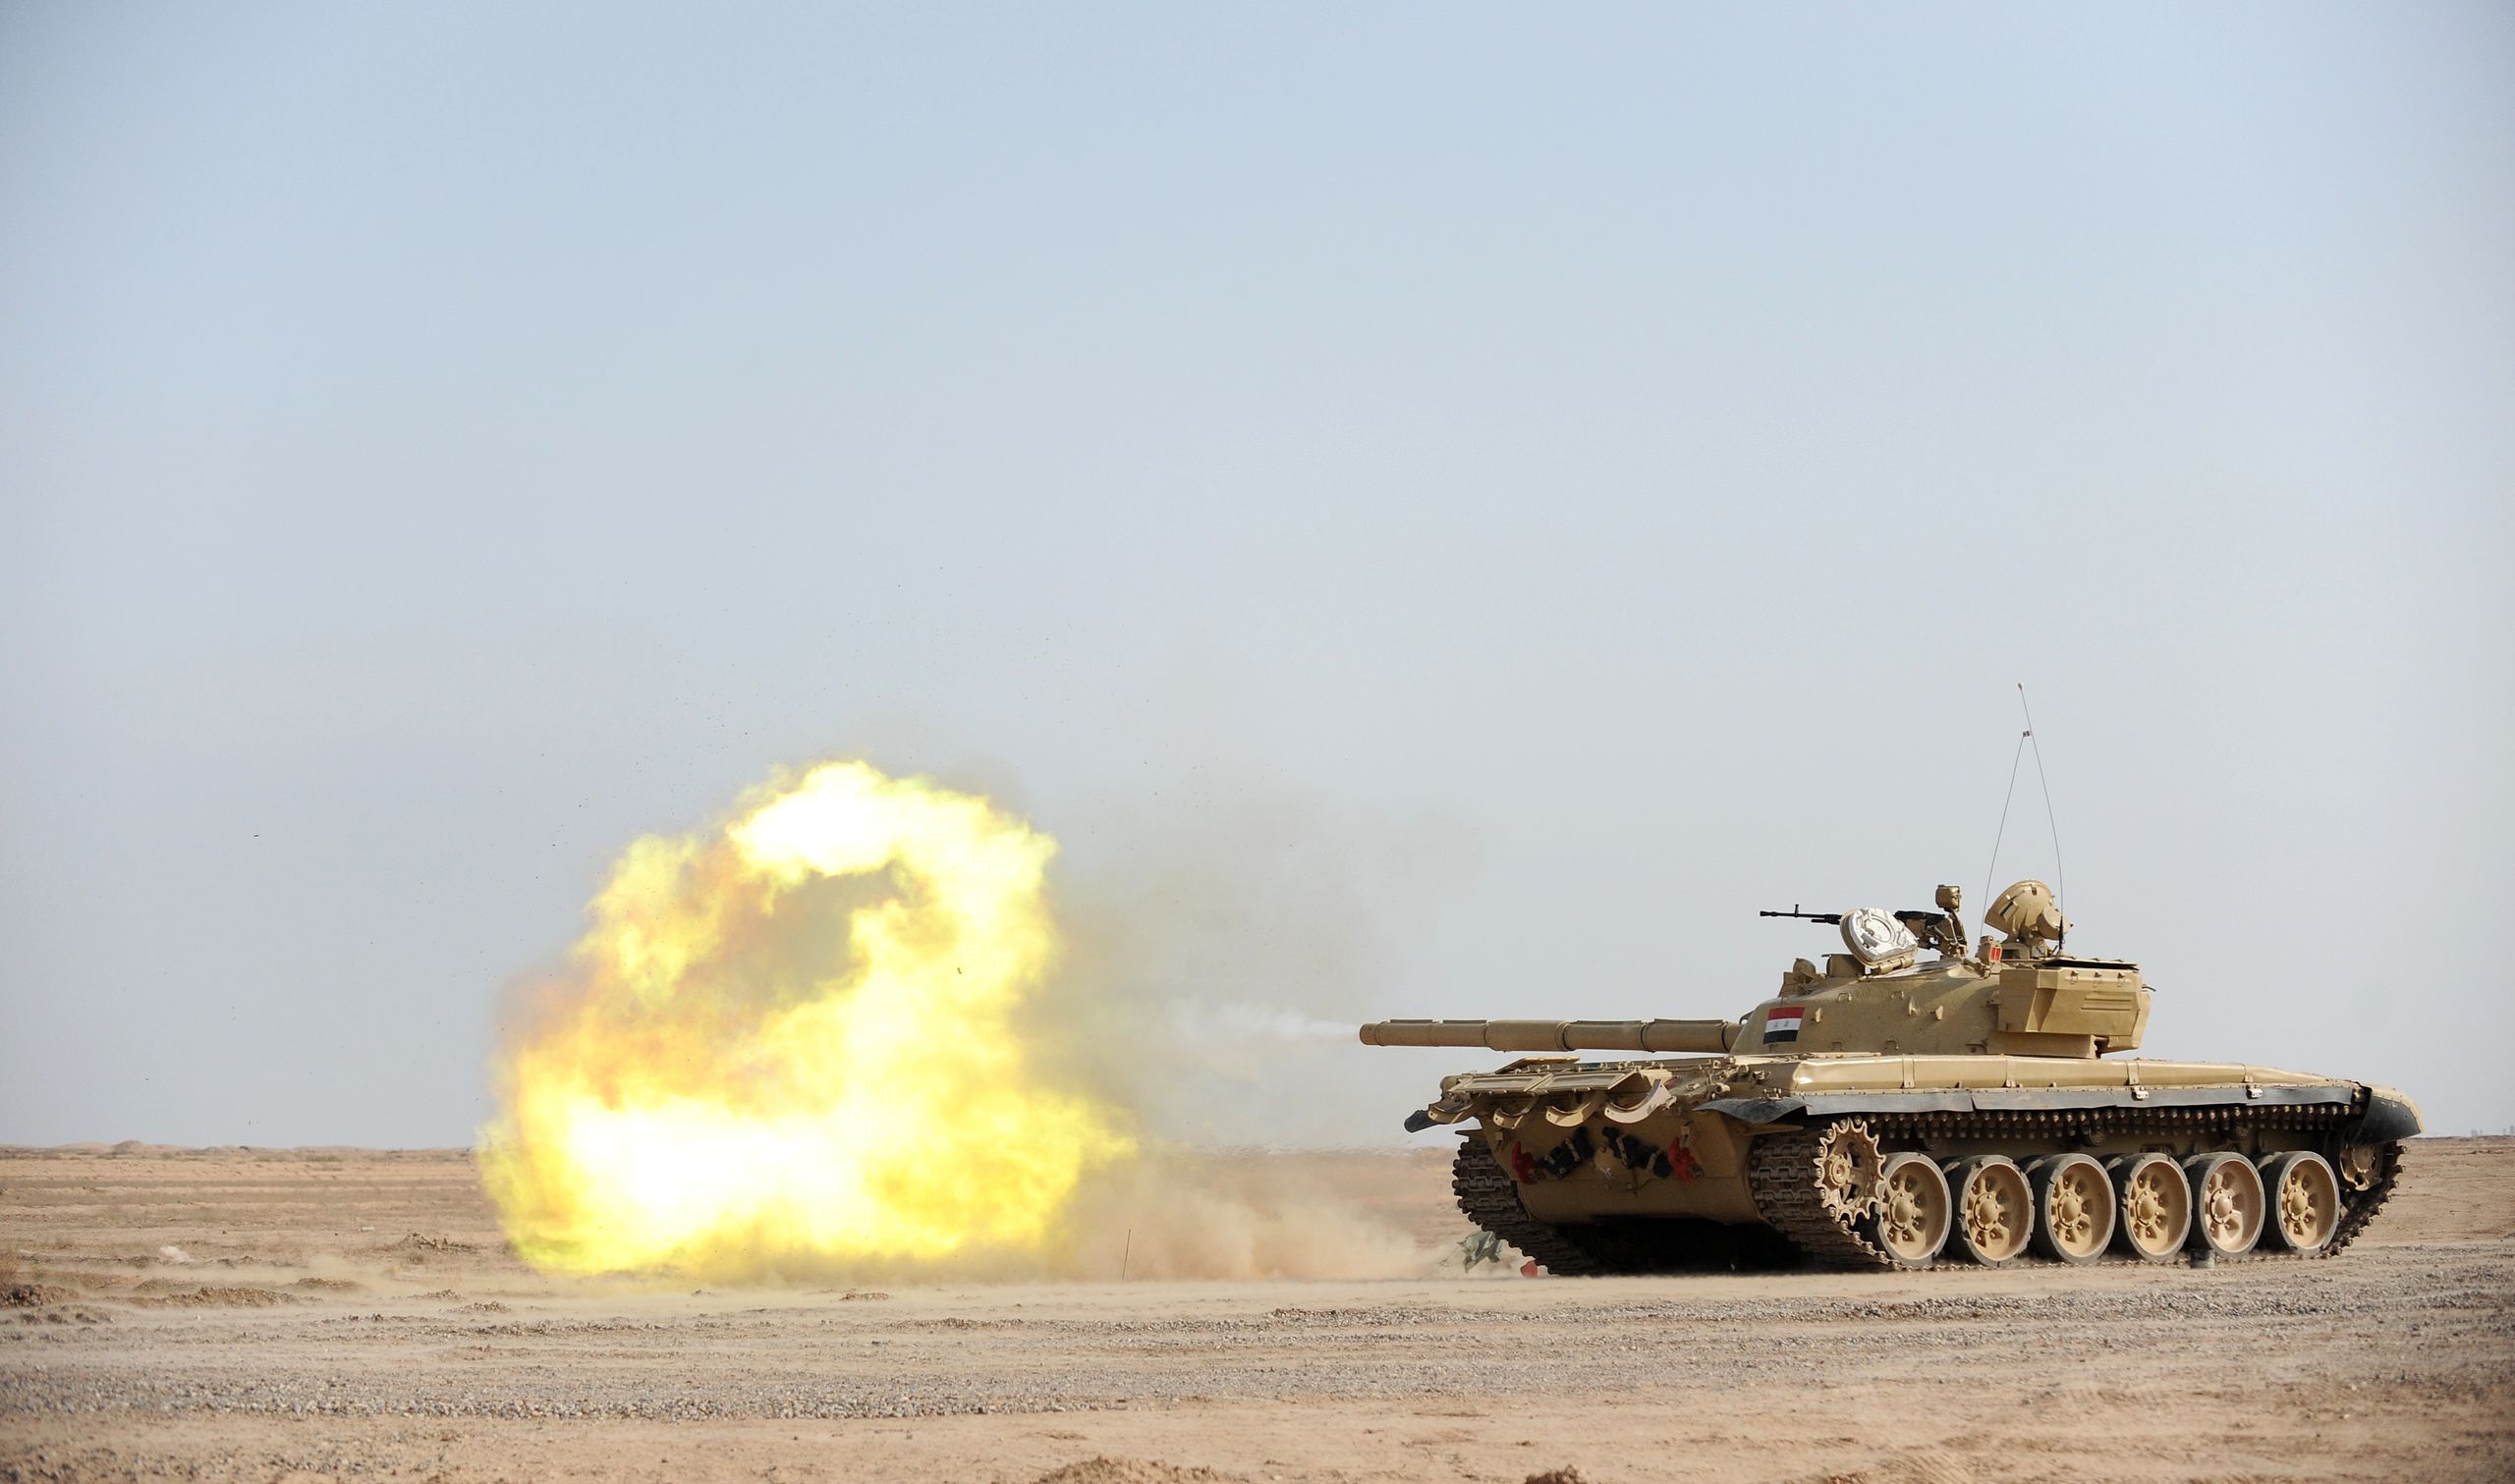 الجيش العراقي T-72 دبابة ينفذ تدريبات بالذخيرة الحية في ميدان بسماية بغداد، 28 أكتوبر 2008.